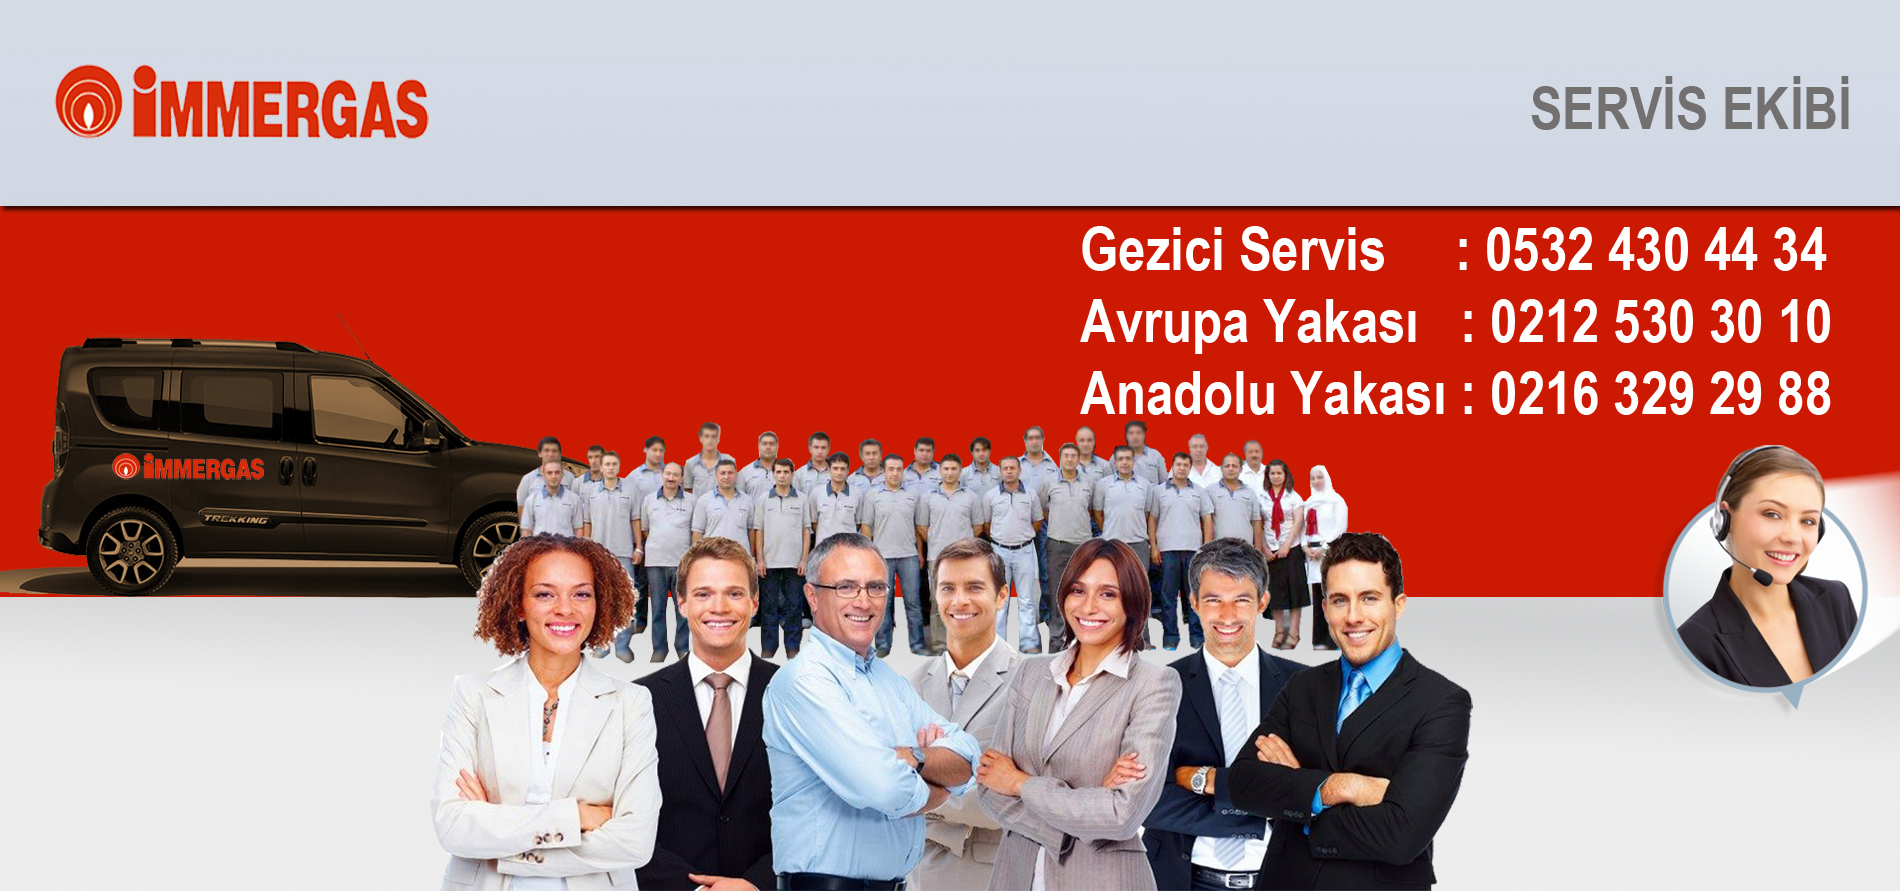 Zühtüpaşa Kadıköy İmmergas yetkili servis ekibi